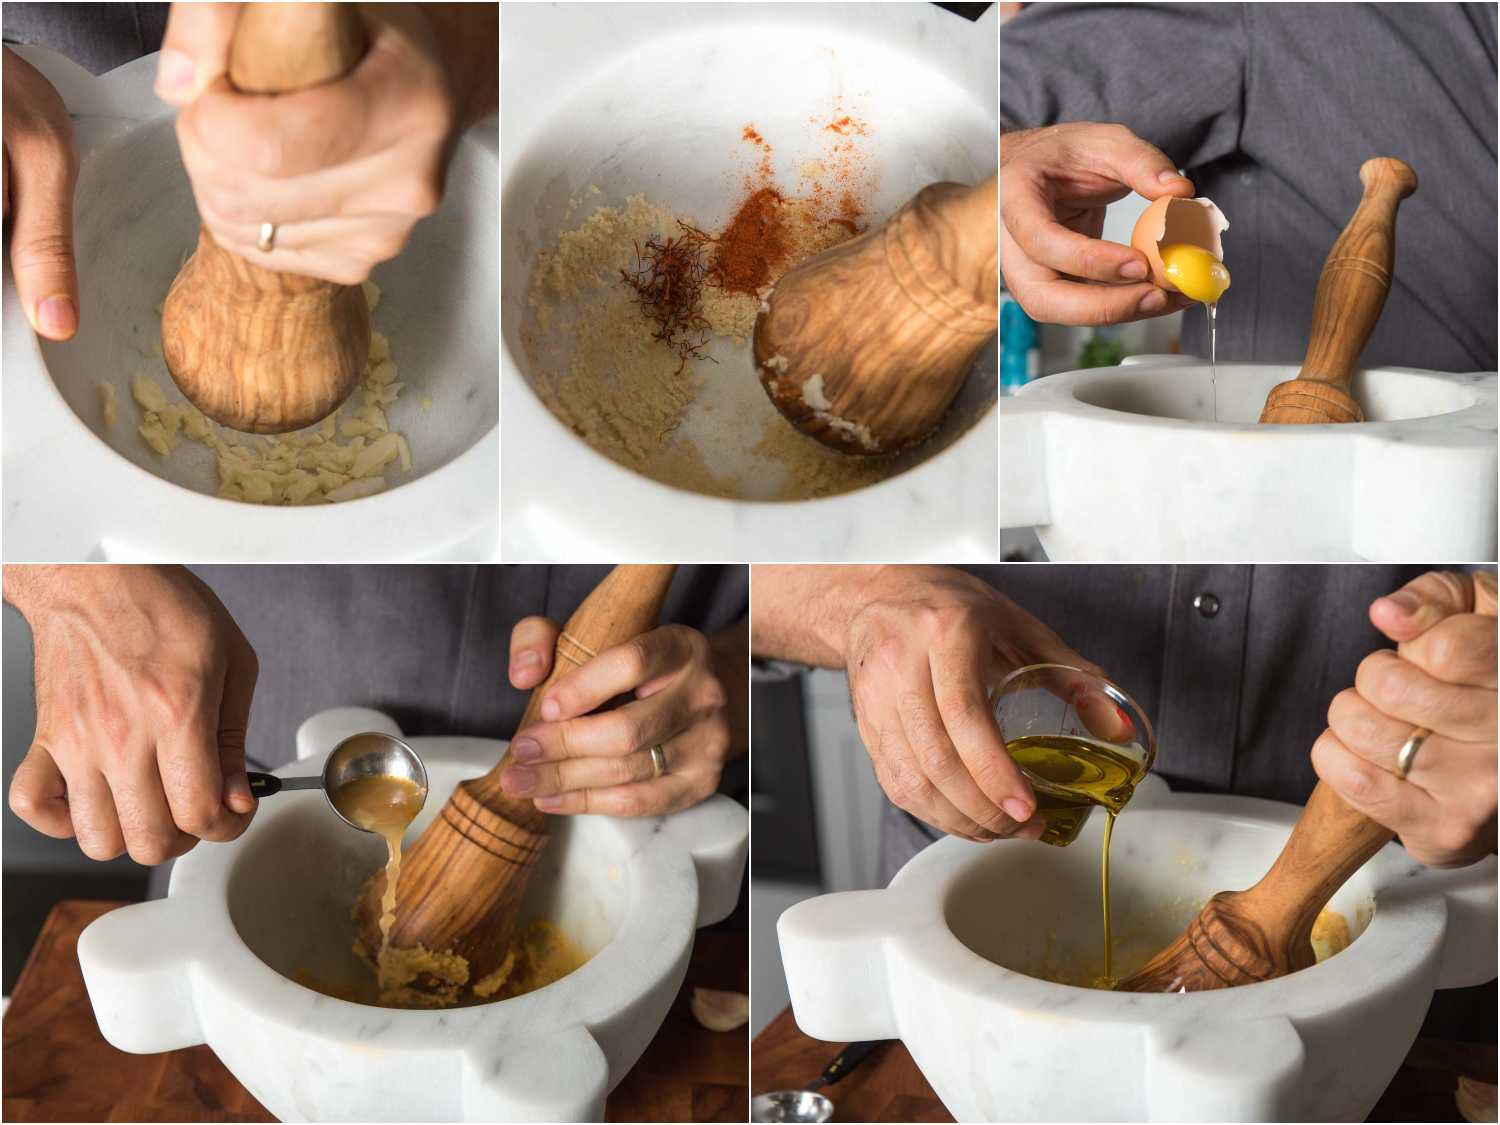 用研钵和研杵制作肉酱的拼贴画:把大蒜、辣椒粉、面包屑、蛋黄、鱼汤和橄榄油捣成浓稠的糊状。gydF4y2Ba